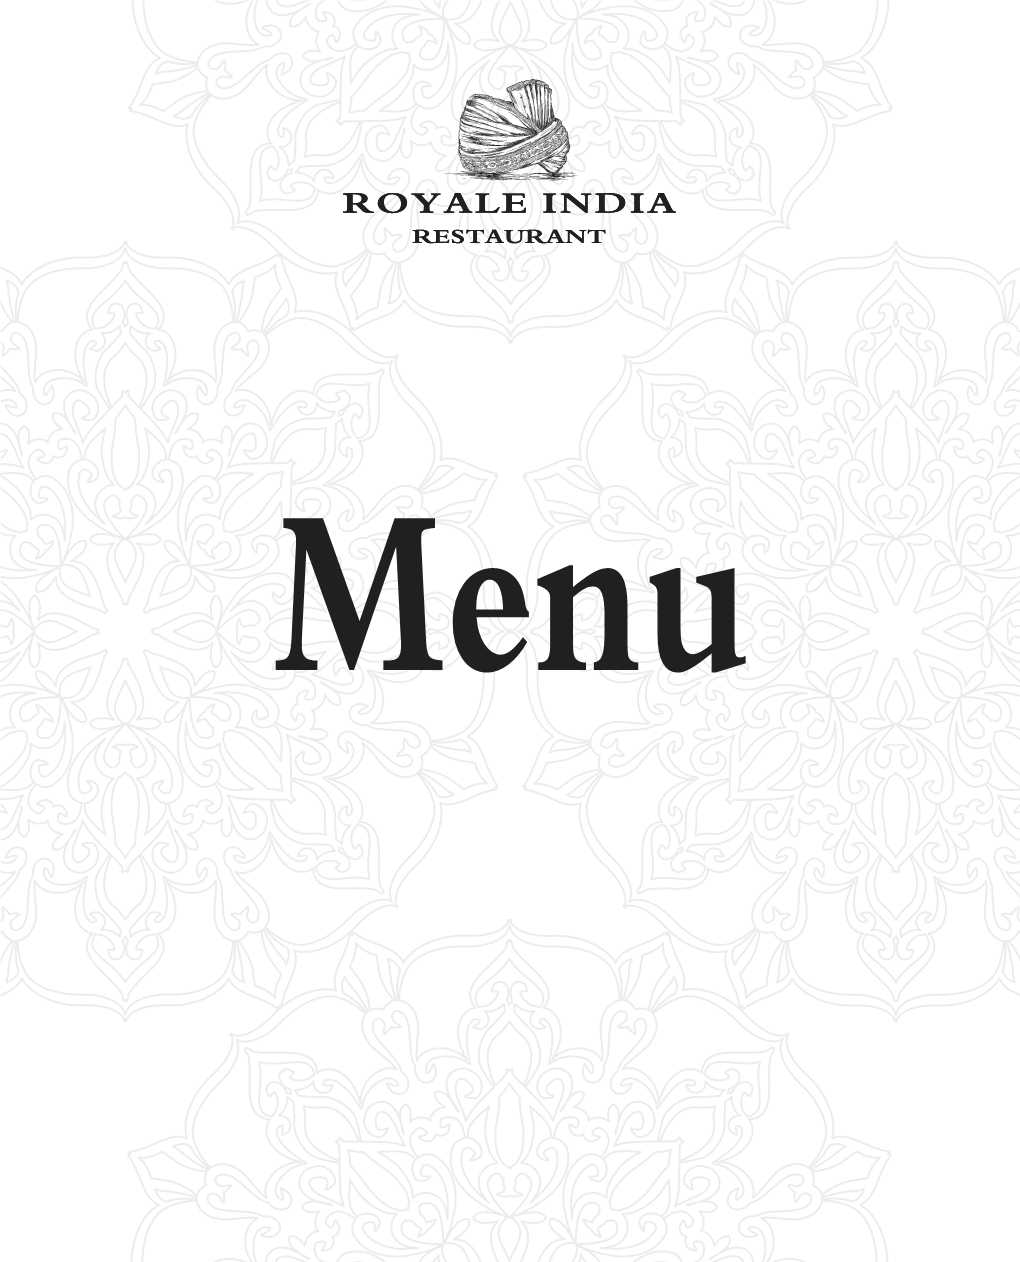 Royale India Royale India